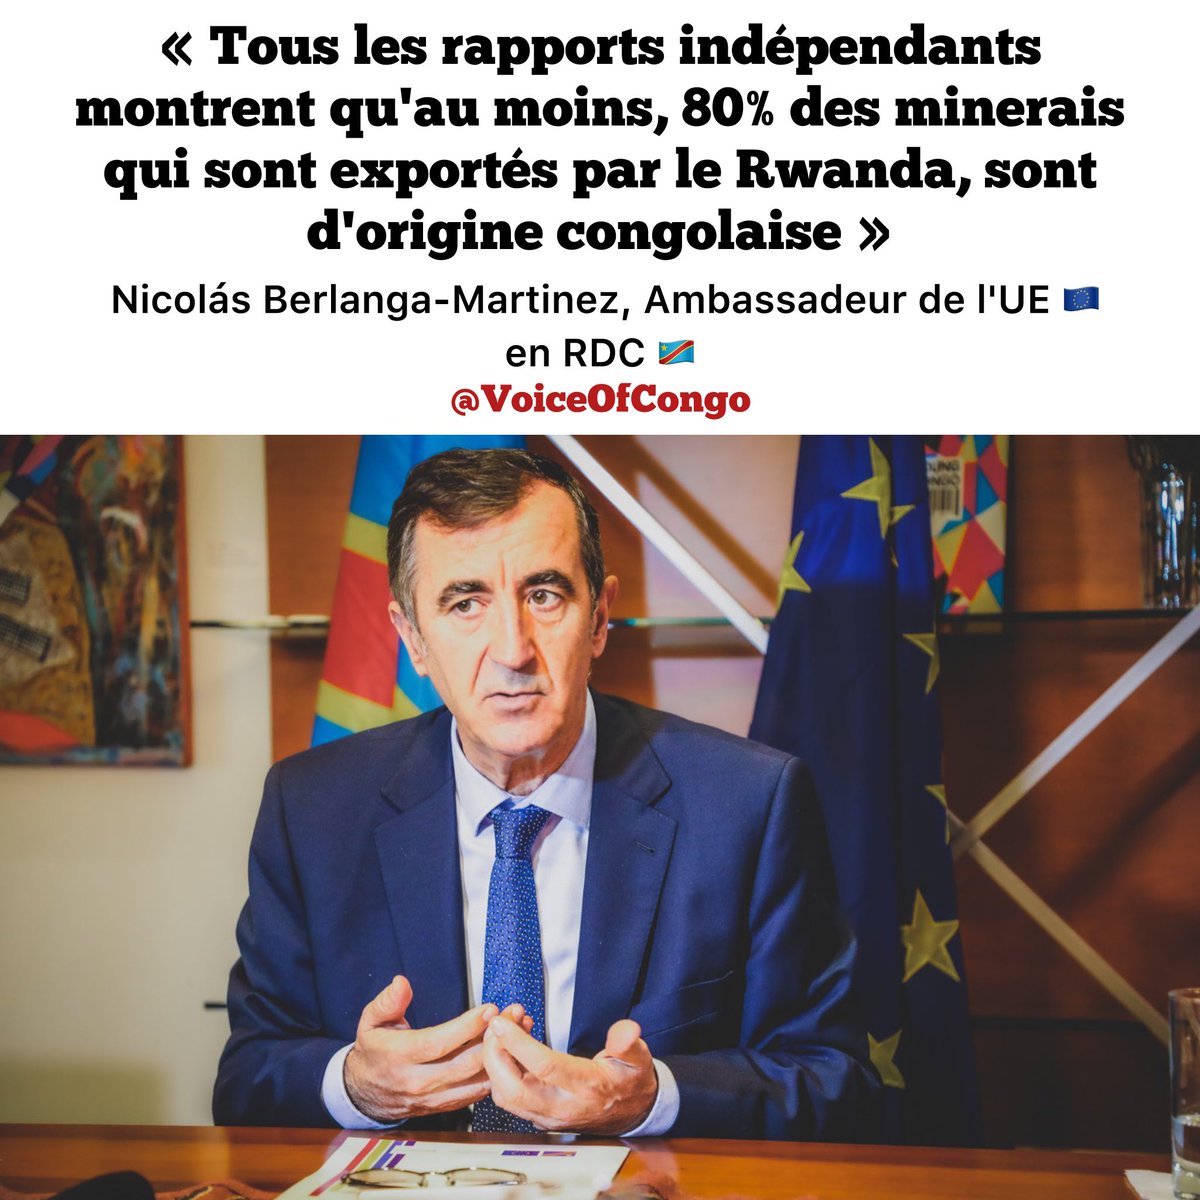 Selon Nicolás Berlanga-Martinez, Ambassadeur de l’Union Européenne 🇪🇺 en RDC 🇨🇩, « Tous les rapports indépendants montrent qu’au moins, 80% des minerais qui sont exportés par le Rwanda, sont d’origine congolaise »…. Qu’en pensez-vous ?